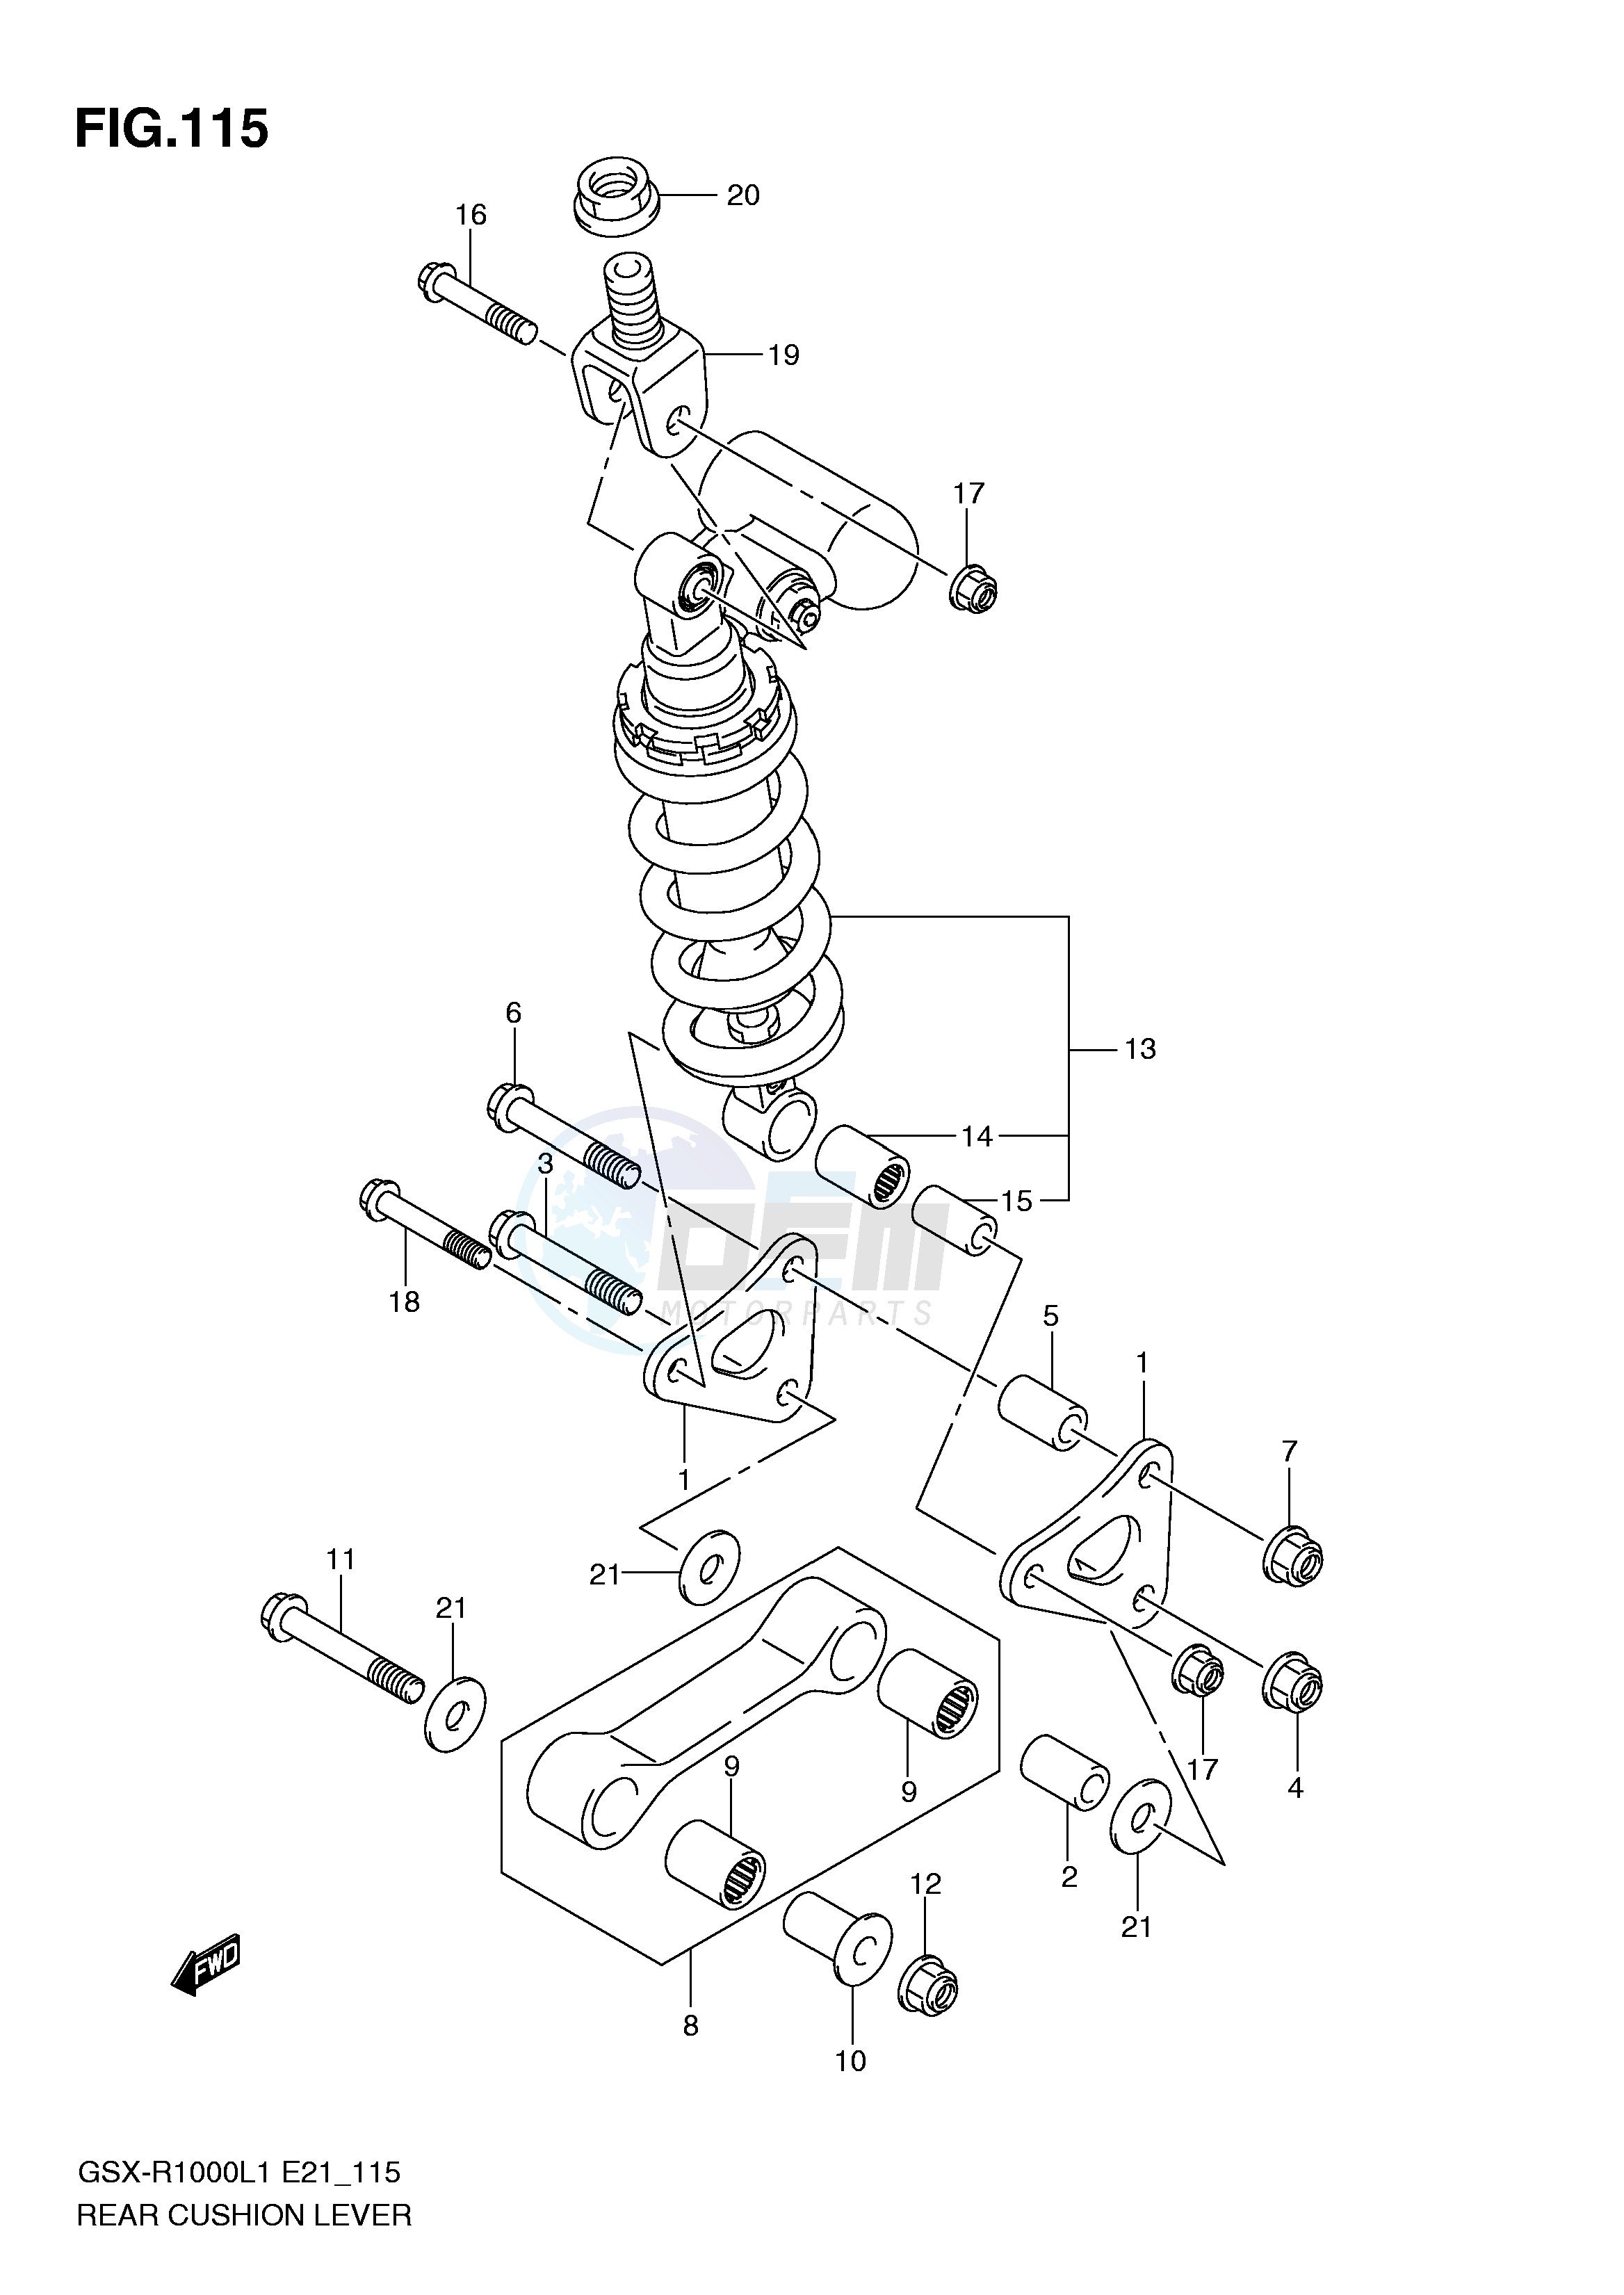 REAR CUSHION LEVER (GSX-R1000L1 E24) blueprint